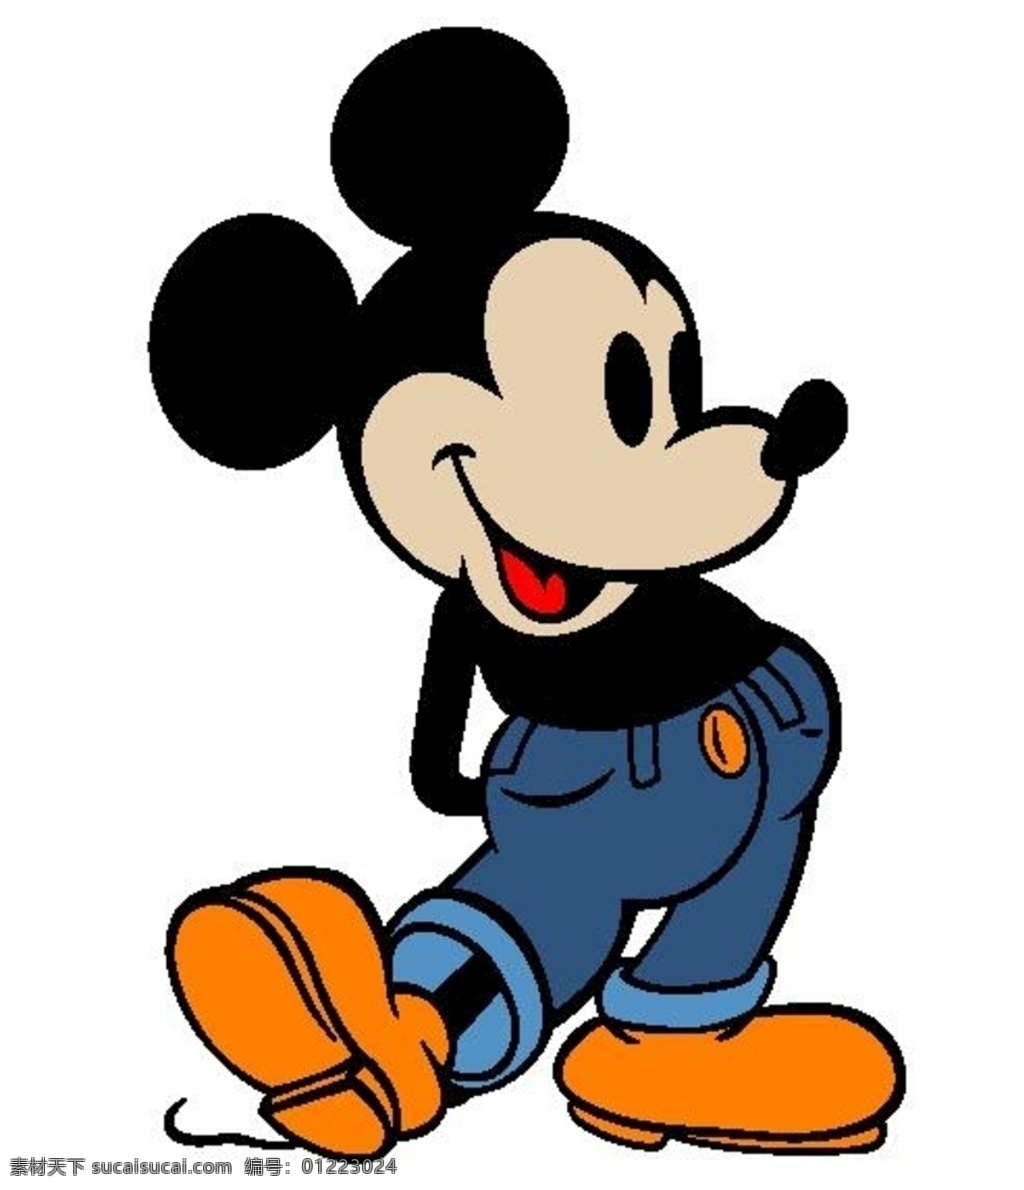 米奇 迪士尼 米老鼠 可爱 老鼠 动漫动画 动漫人物